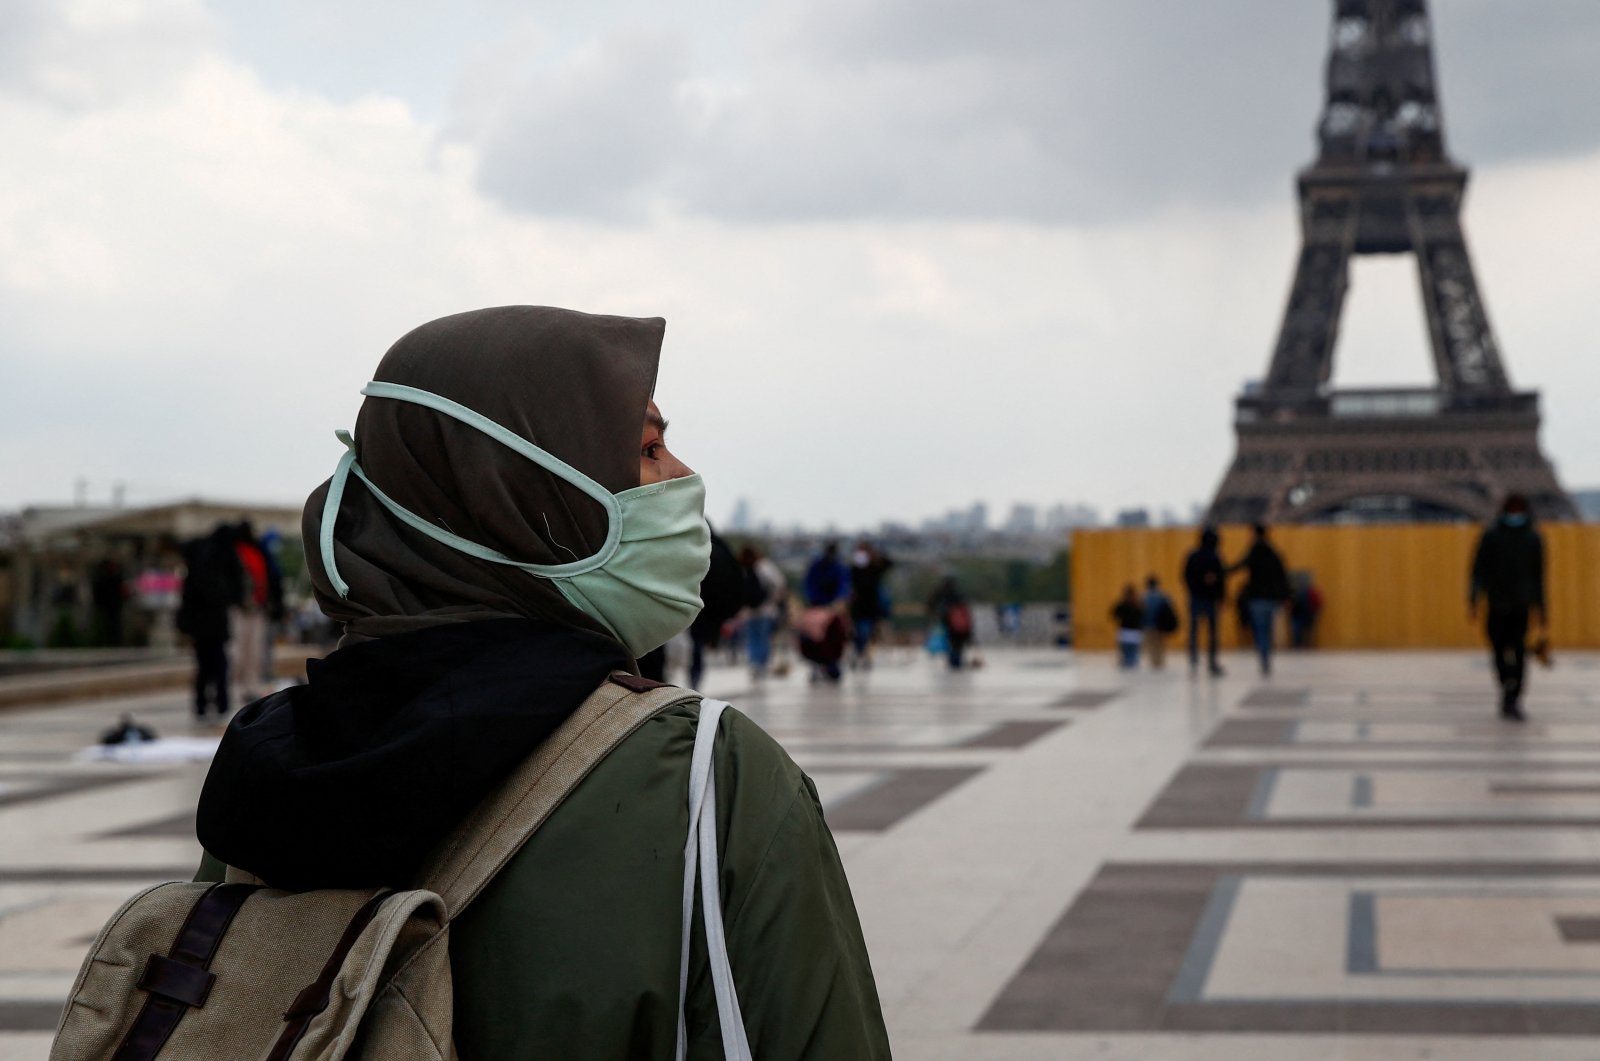 Prancis melanggar perjanjian hak dengan melarang jilbab di sekolah: UN